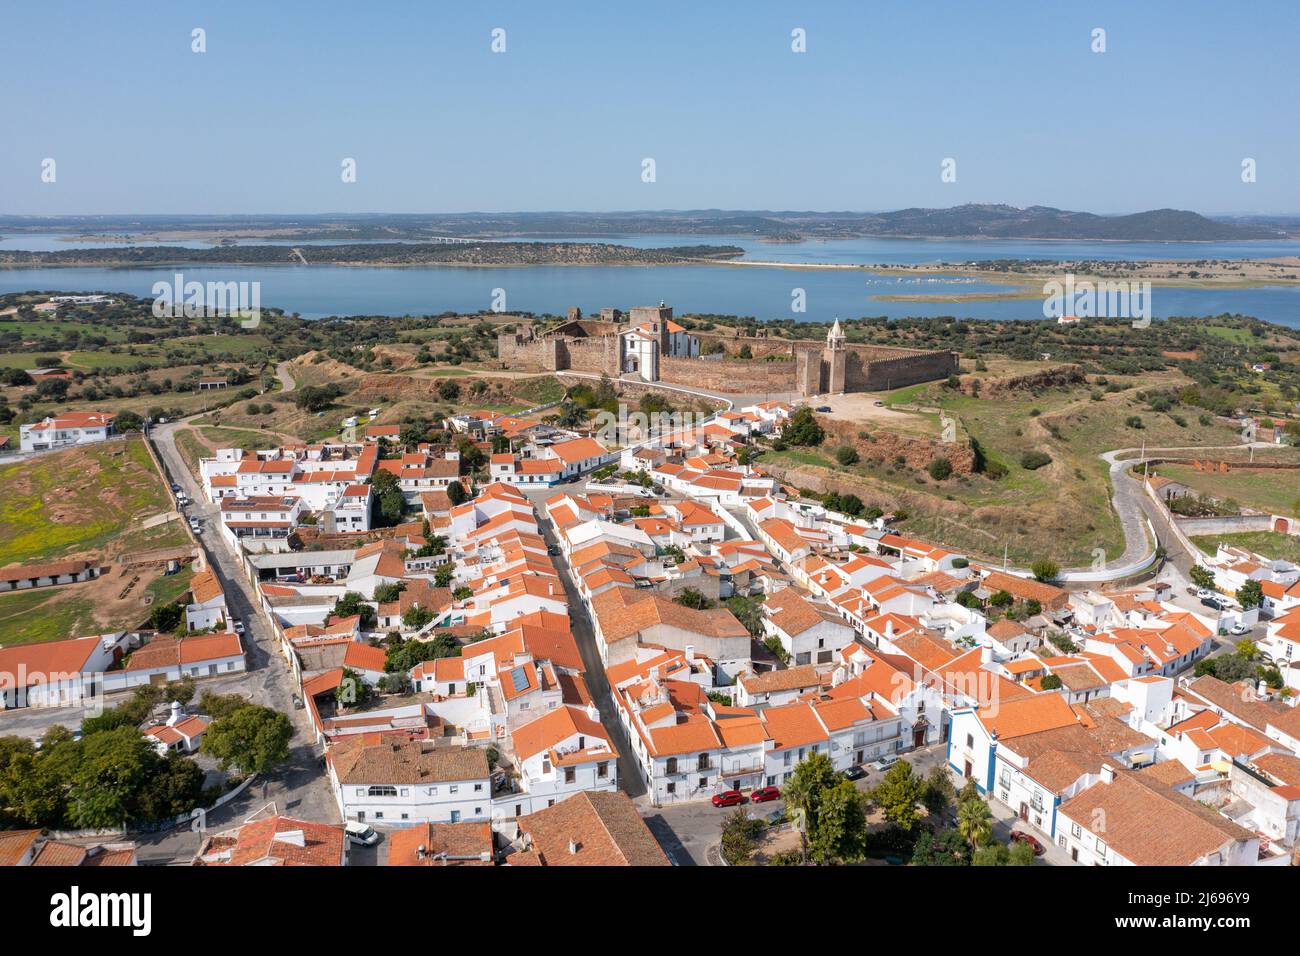 Castelo de Mourão, Mourão, Portugal Stock Photo